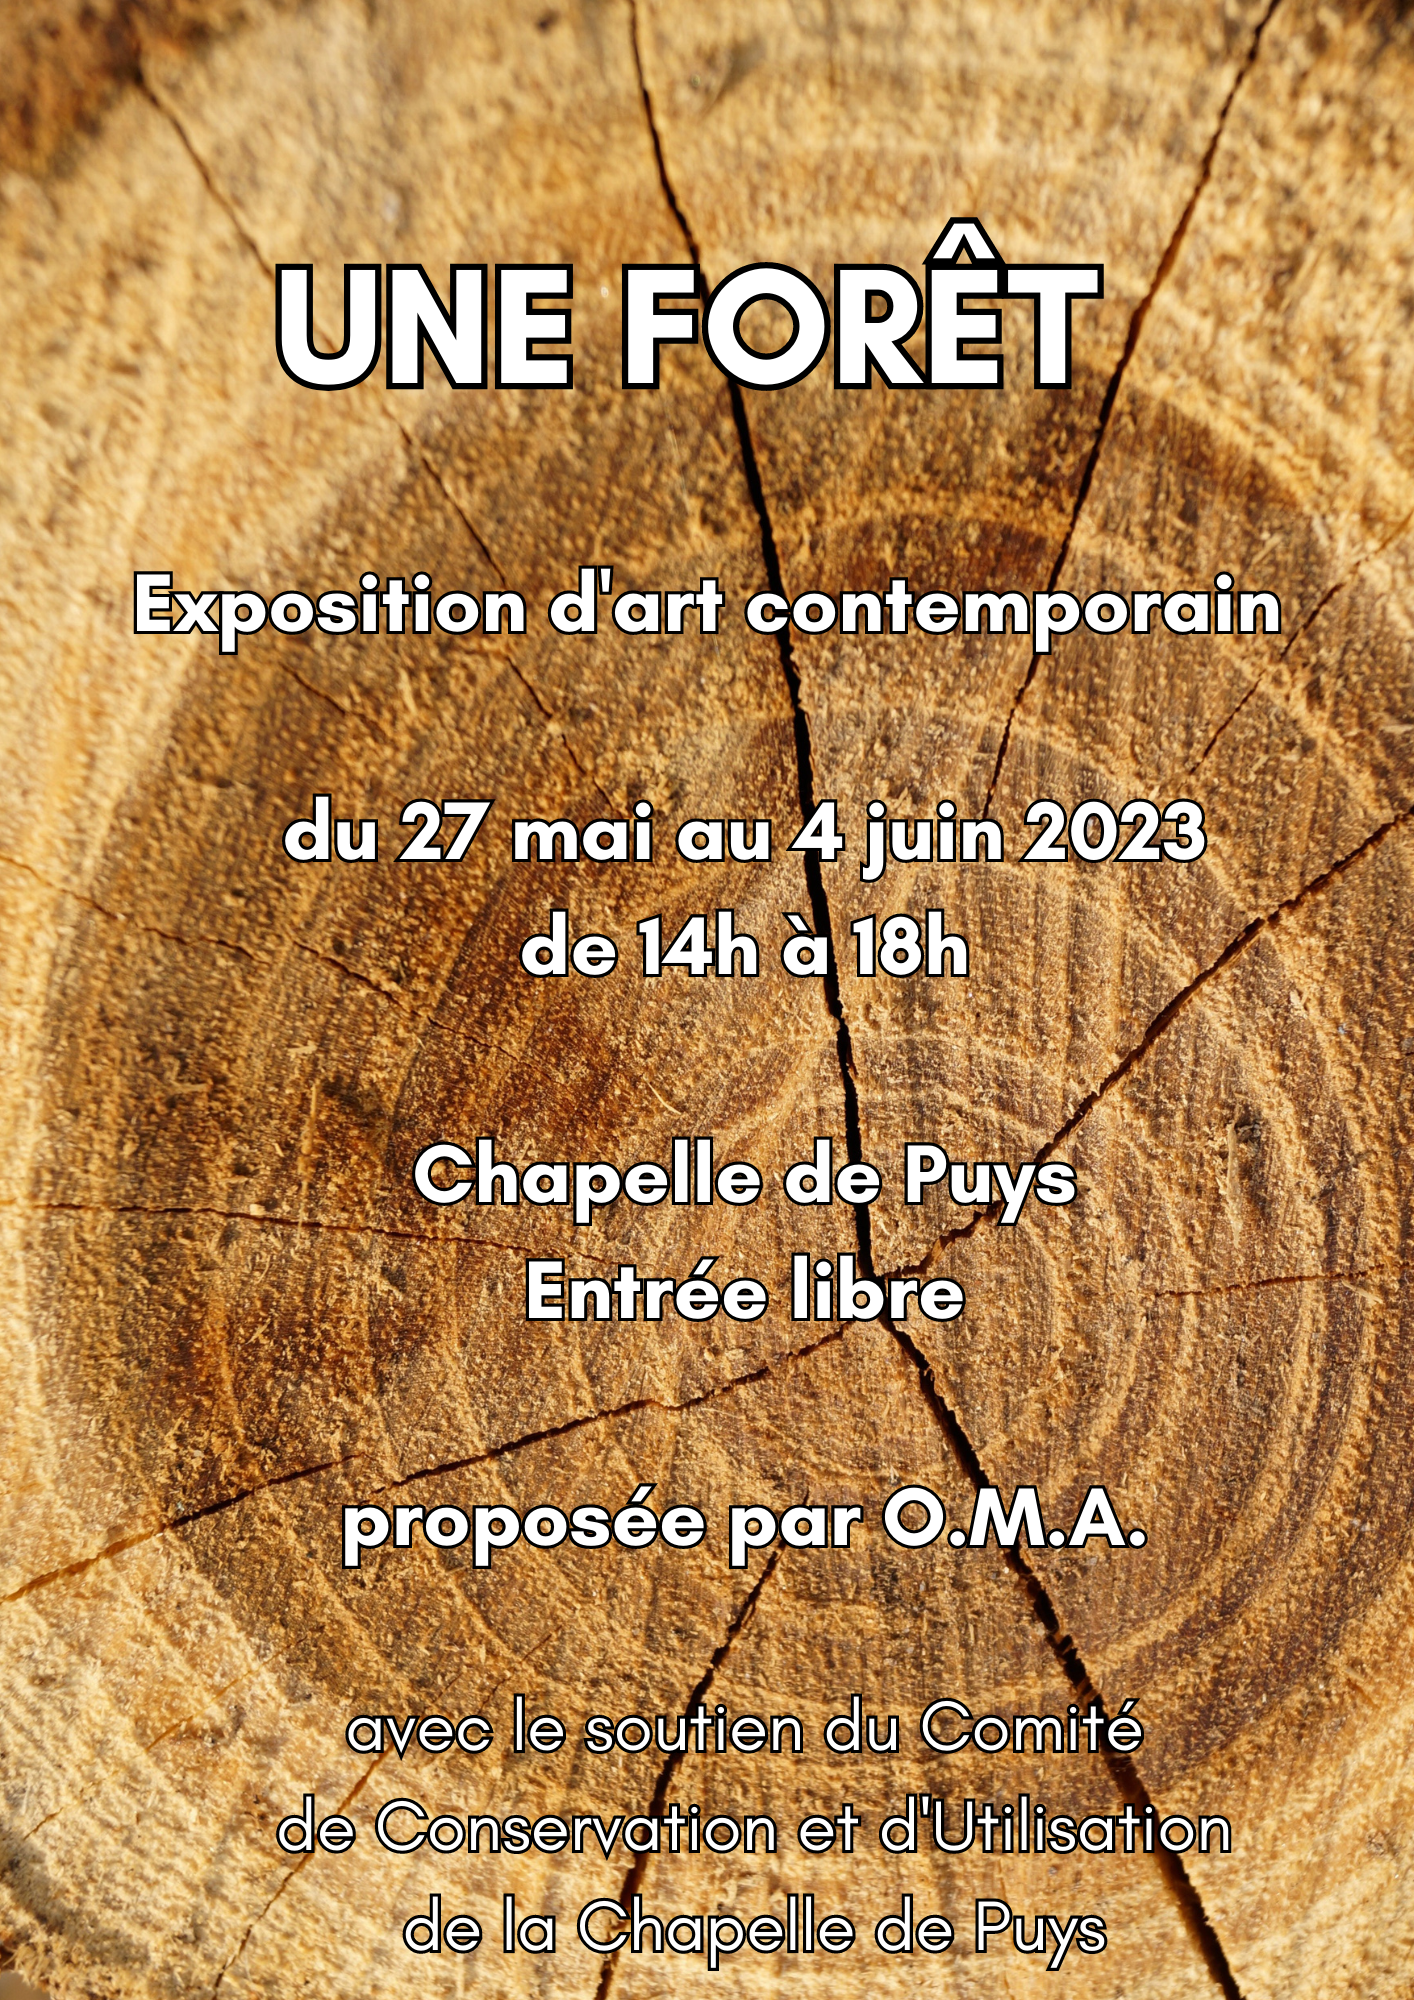 Exposition "Une Forêt" par l'artiste O.M.A.